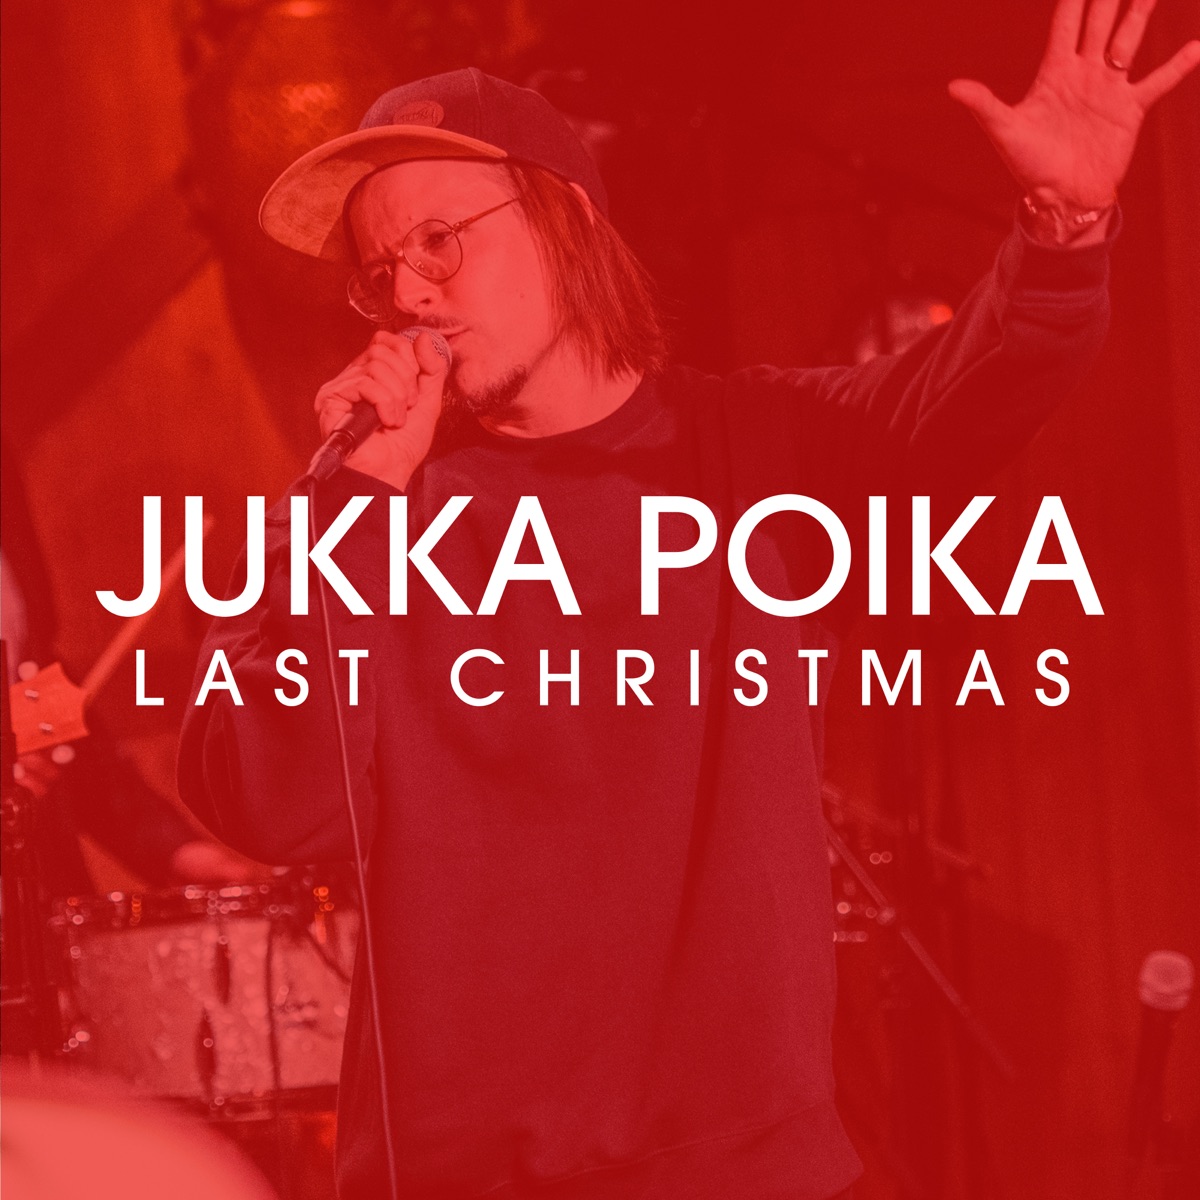 Uusi aamunkoi (feat. Juha Tapio) [Vain elämää kausi 12] - Single by Jukka  Poika on Apple Music